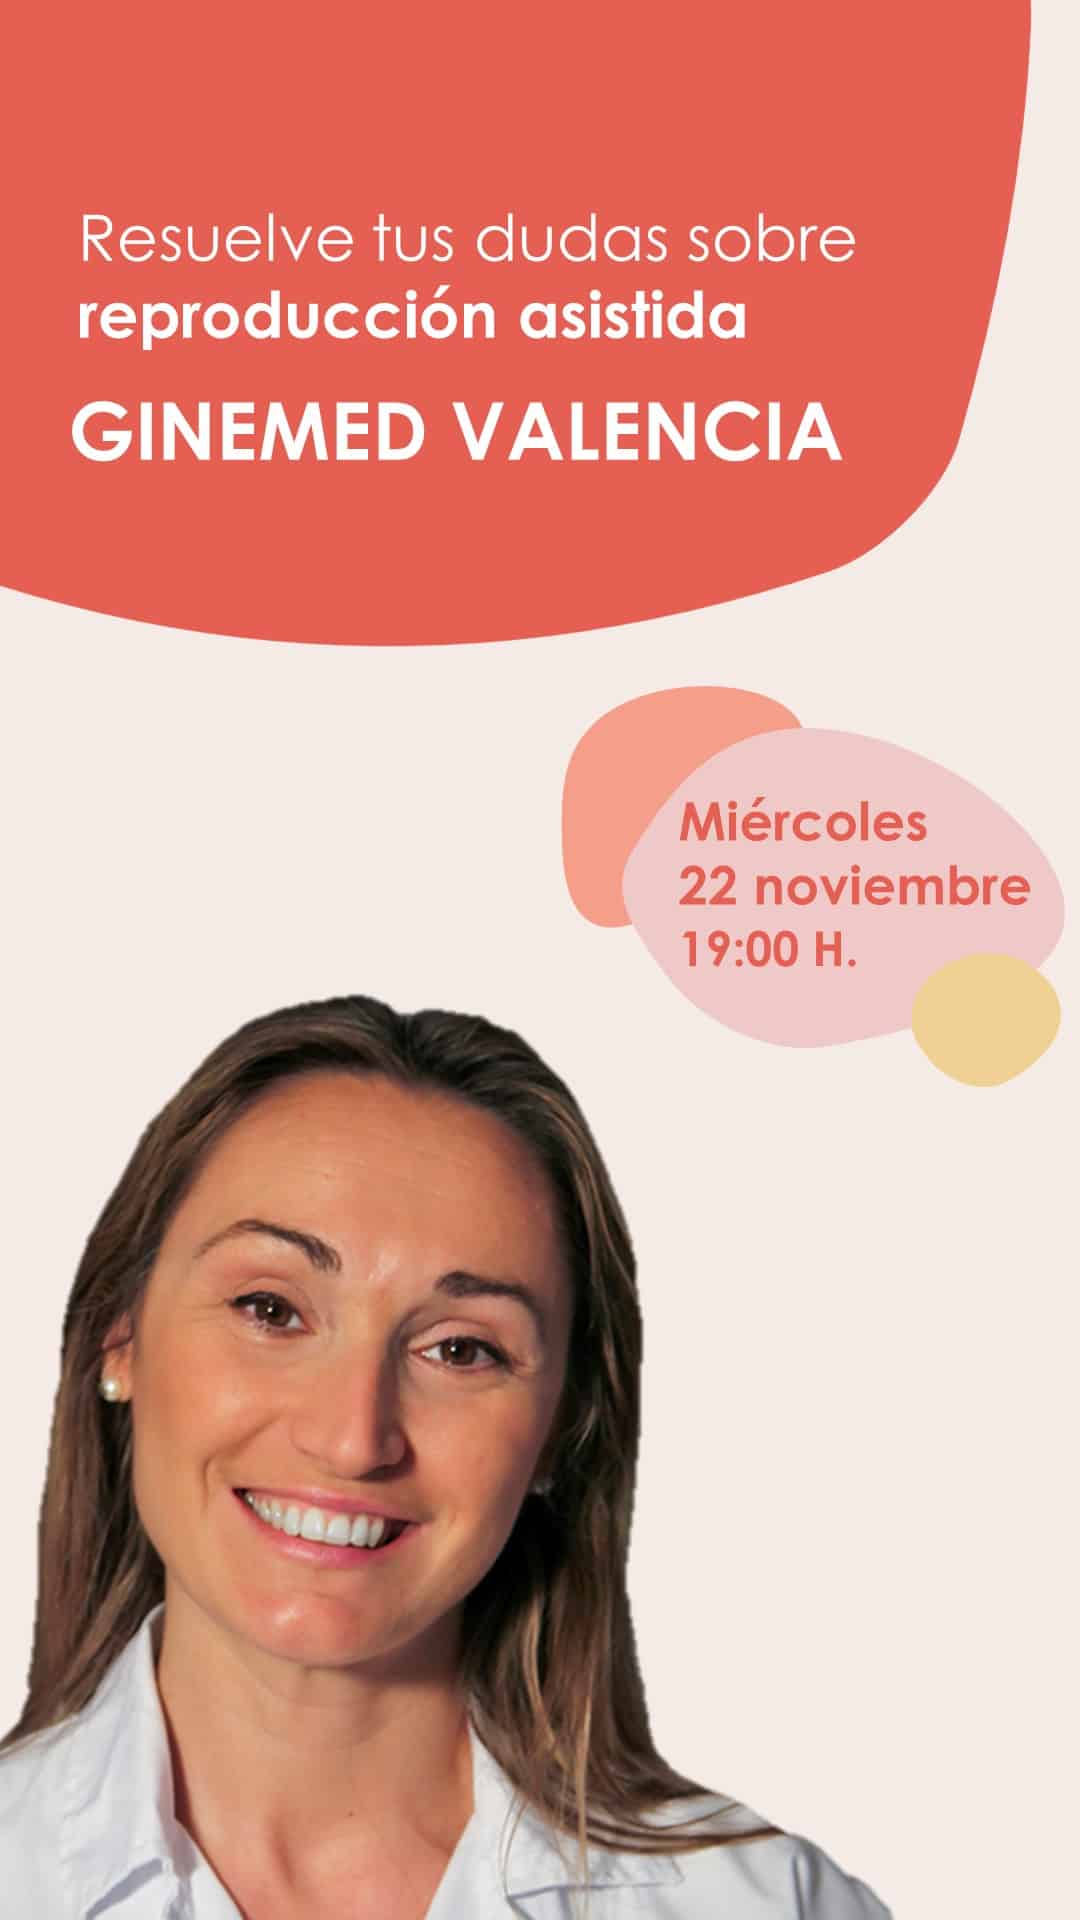 Instagram Live desde Ginemed Valencia con la Dra. Elena de la Fuente el miércoles 22 de noviembre a las 7 de la tarde